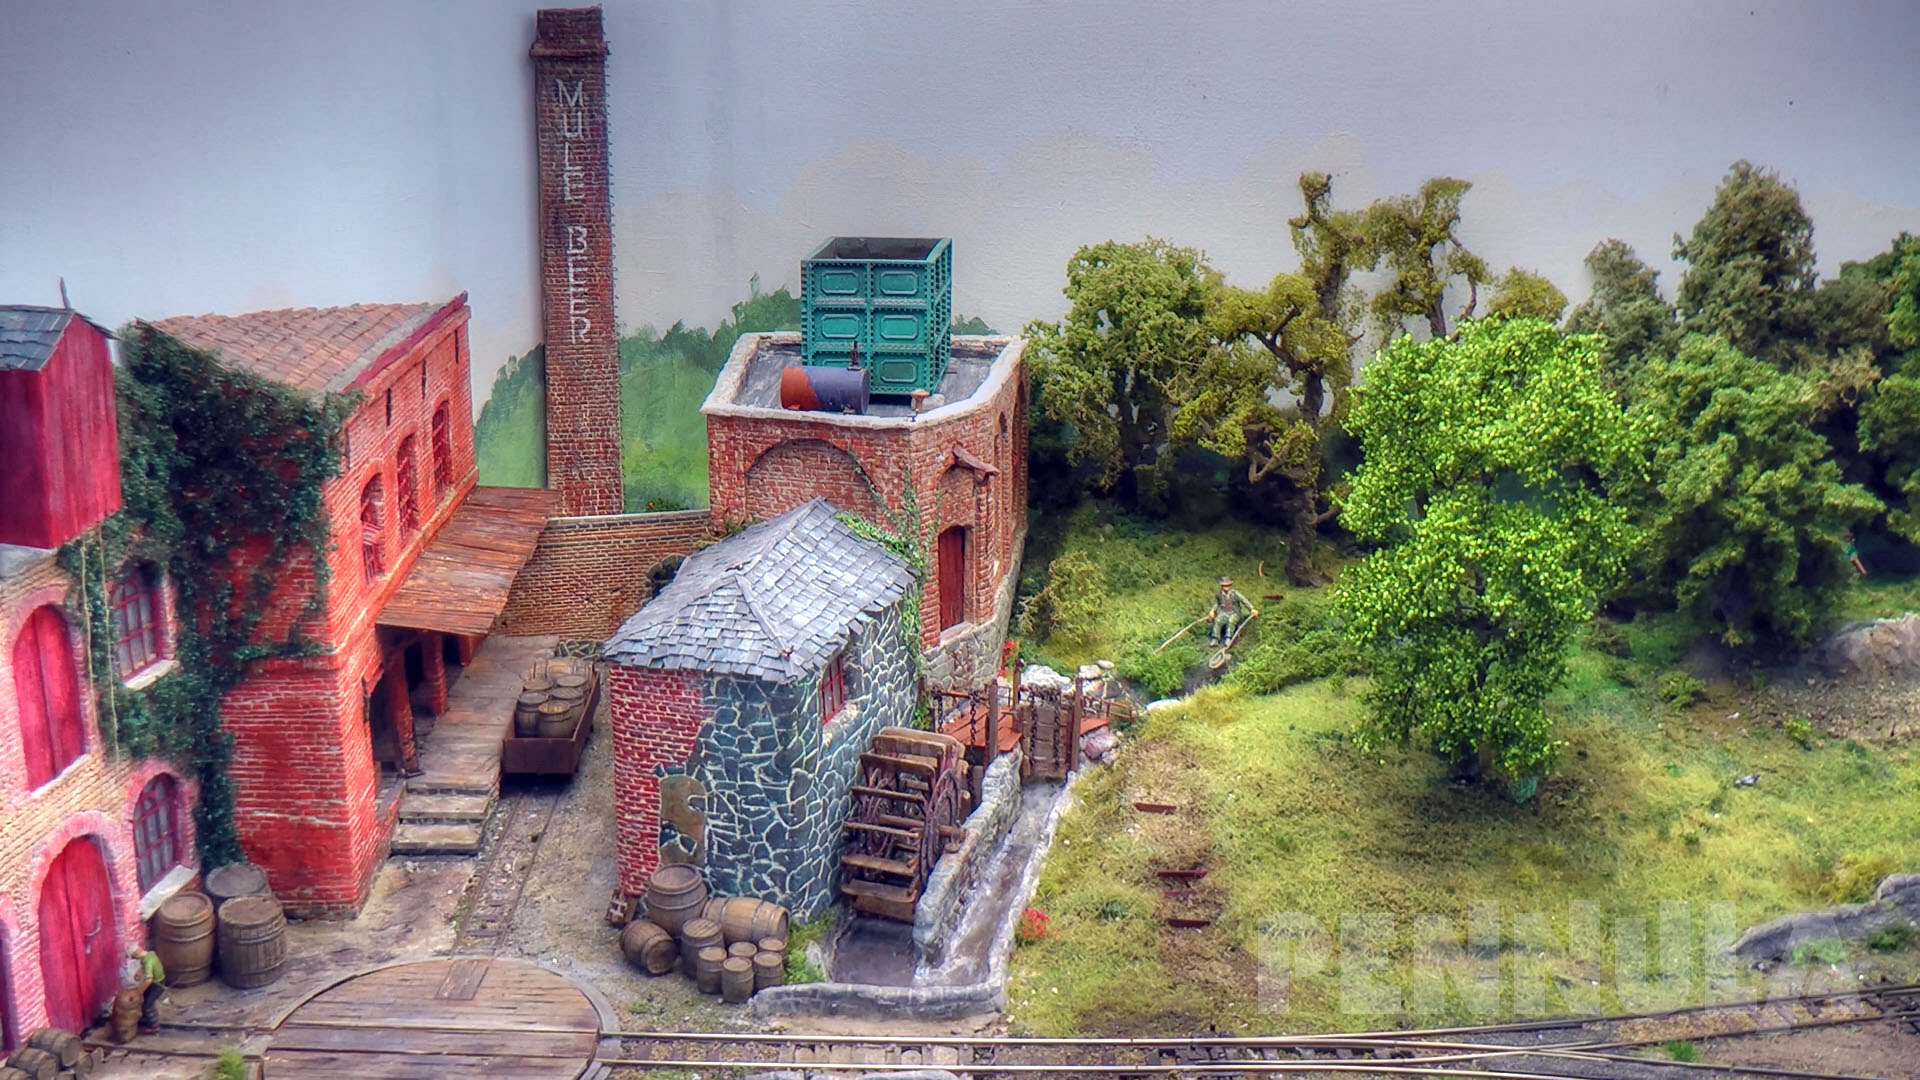 Schmalspurbahn Feldbahn Modellbau - Spur 0 Diorama Old England von Samuel de Zutter